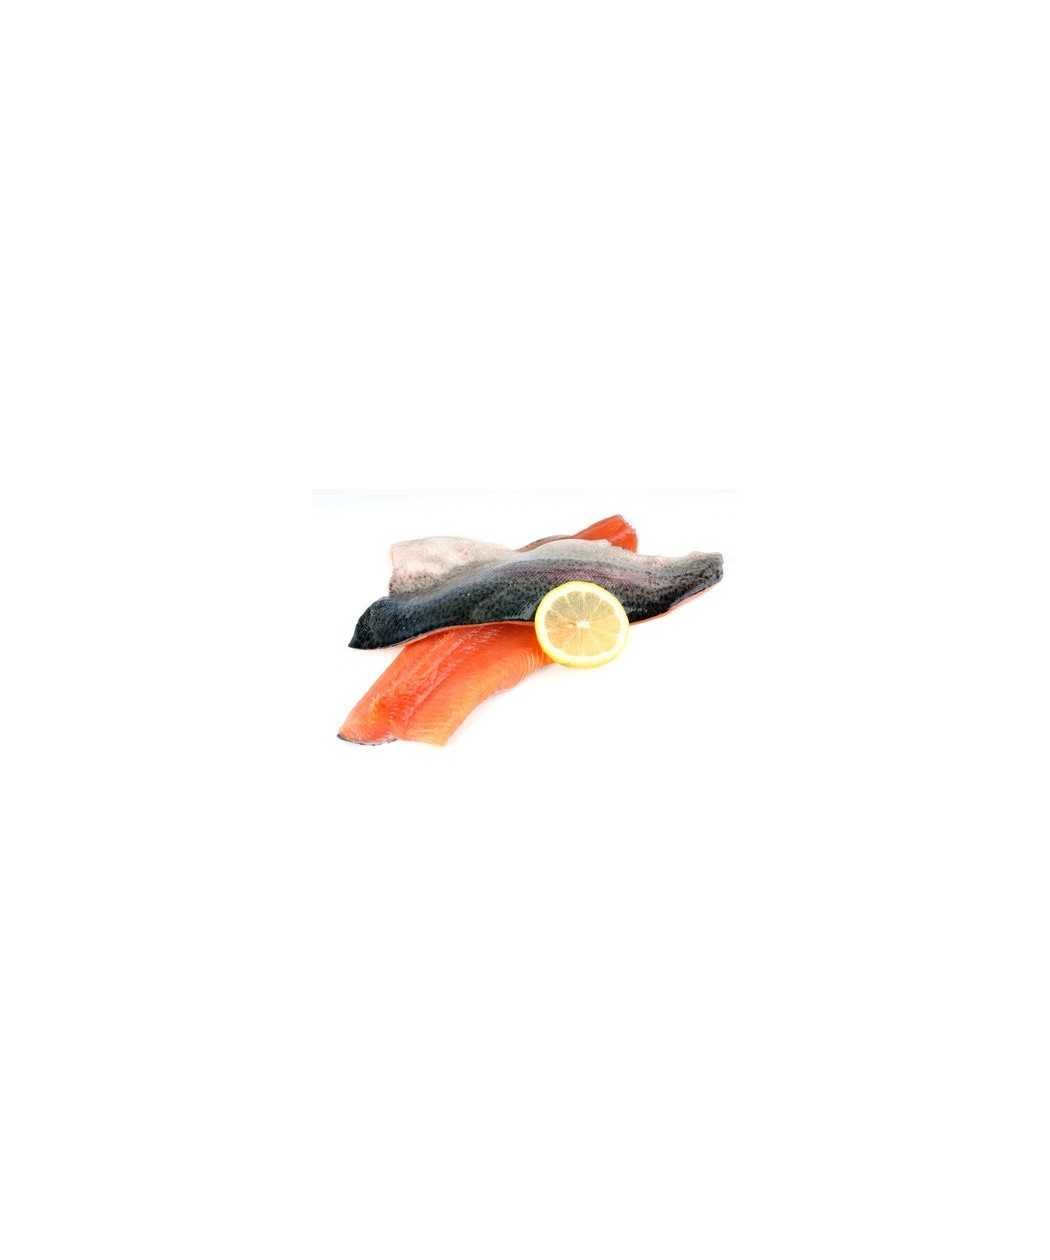 Filet de truite saumonée lot de 1 kg (Onchorynchus mykiss)